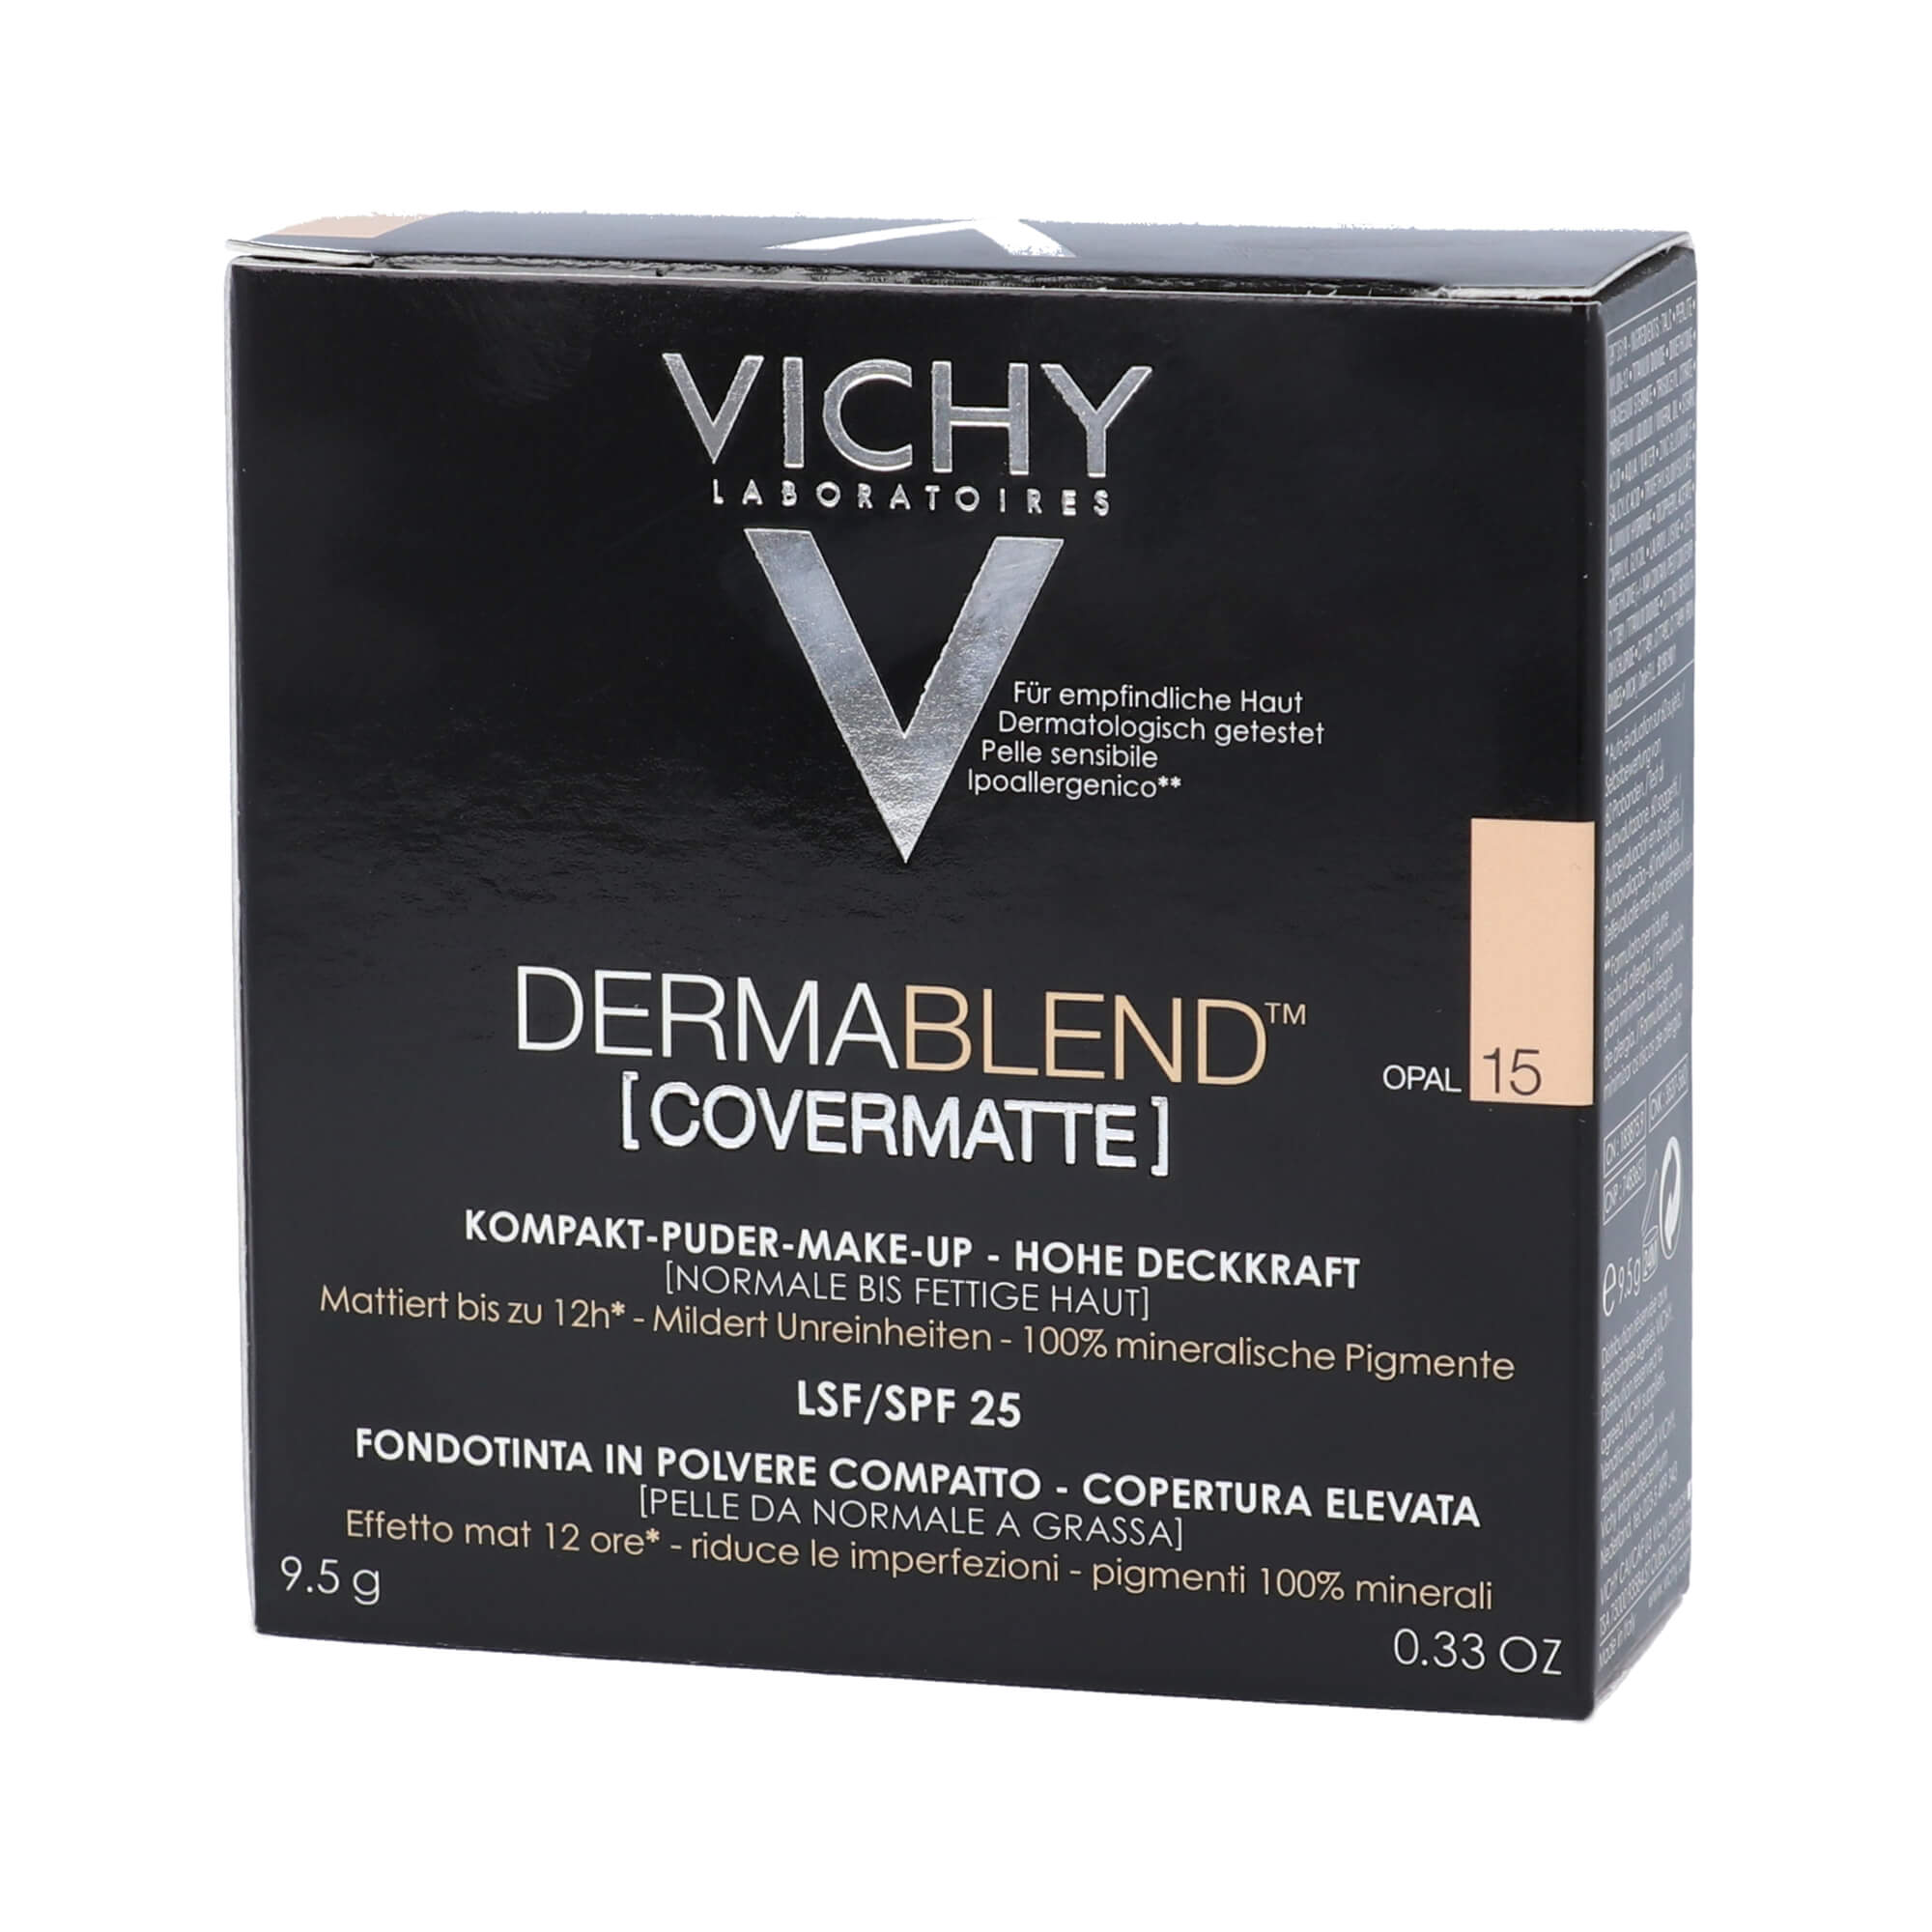 Vichy Dermablend Kompakt Puder Make-up Nuance 15 Opal